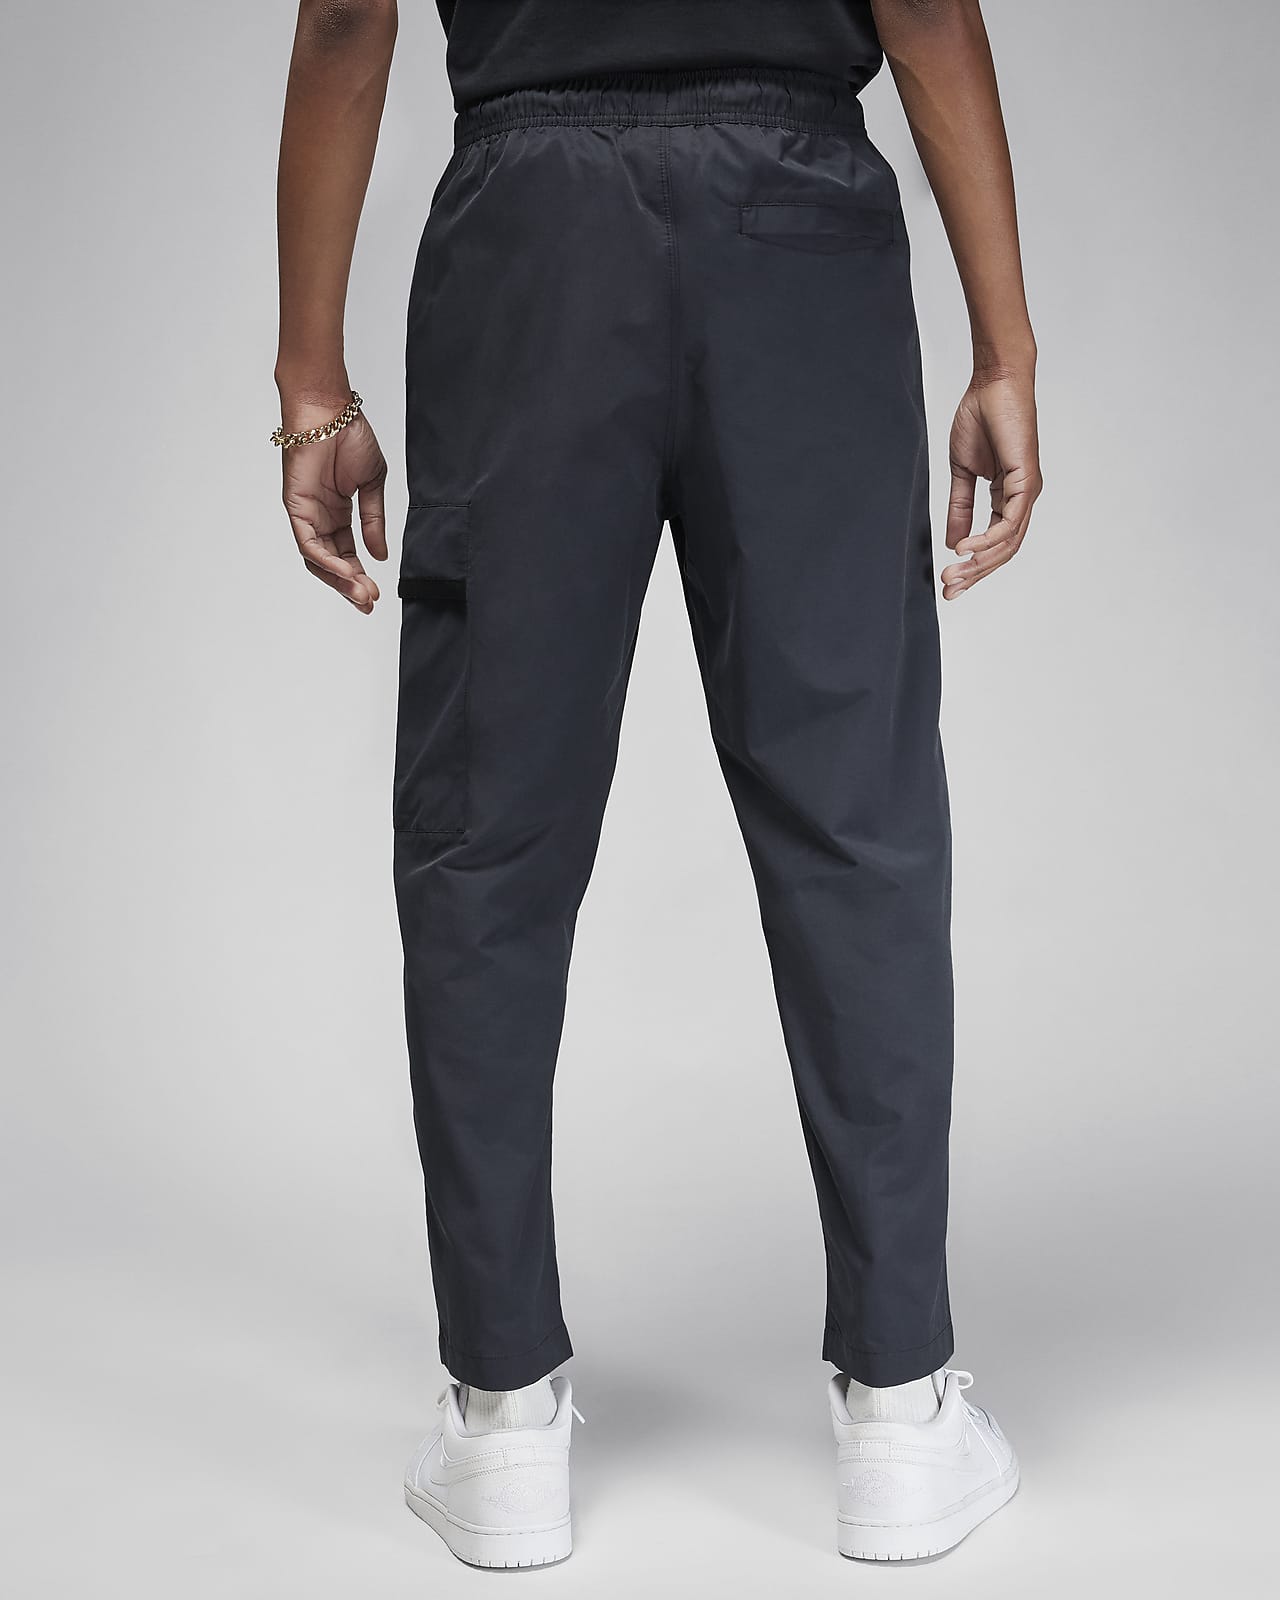 Pants de tejido Woven para mujer Jordan. Nike MX